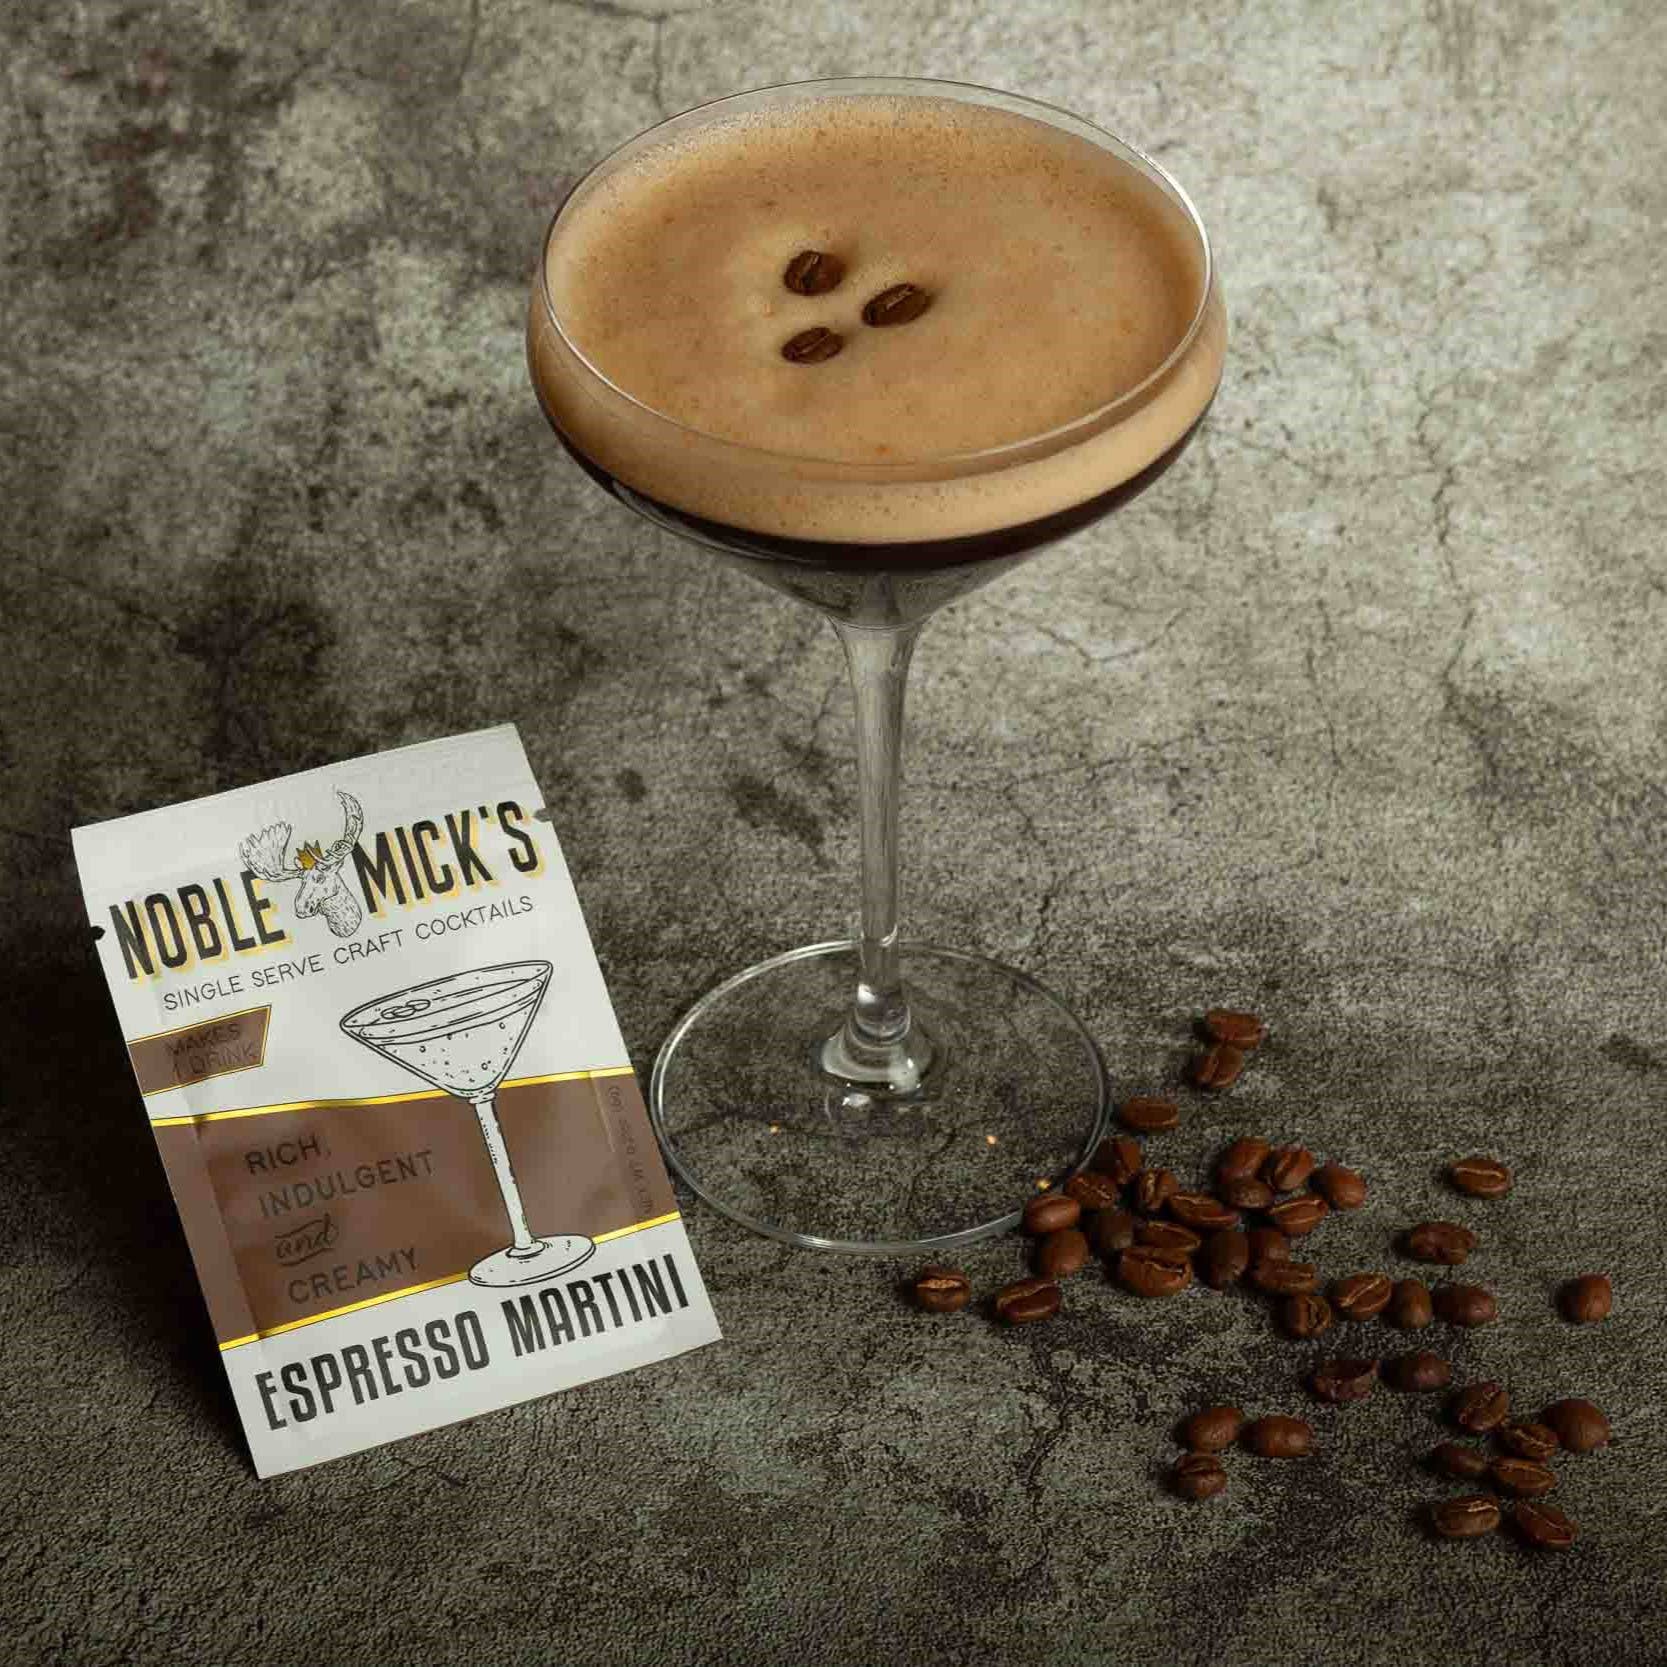 Noble Mick's - Espresso Martini